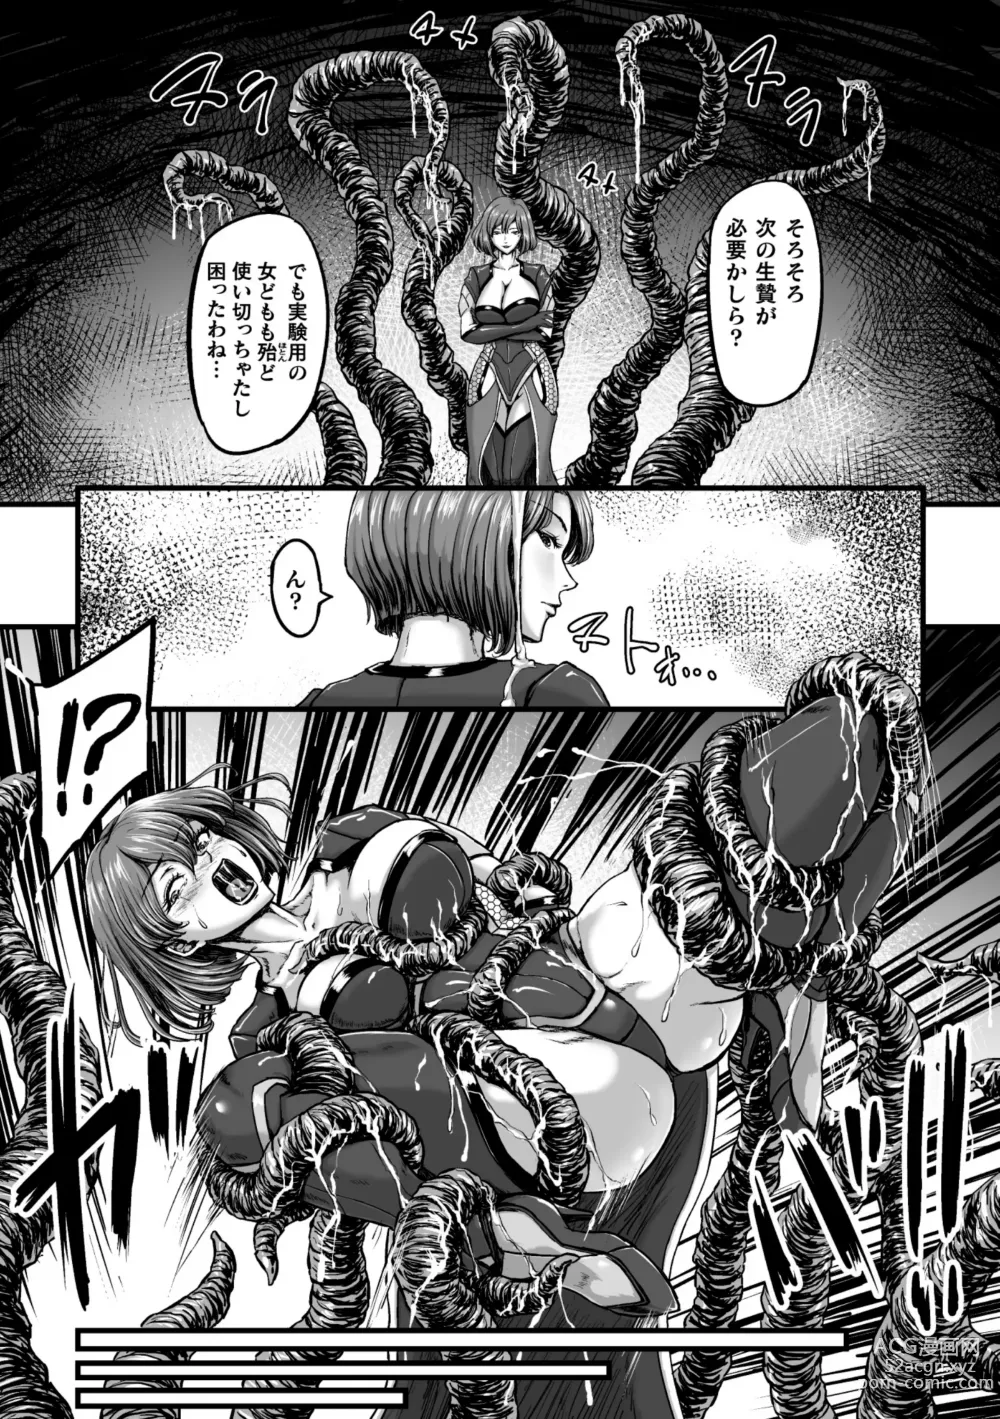 Page 7 of manga Kangoku Tentacle Battleship Episode 3